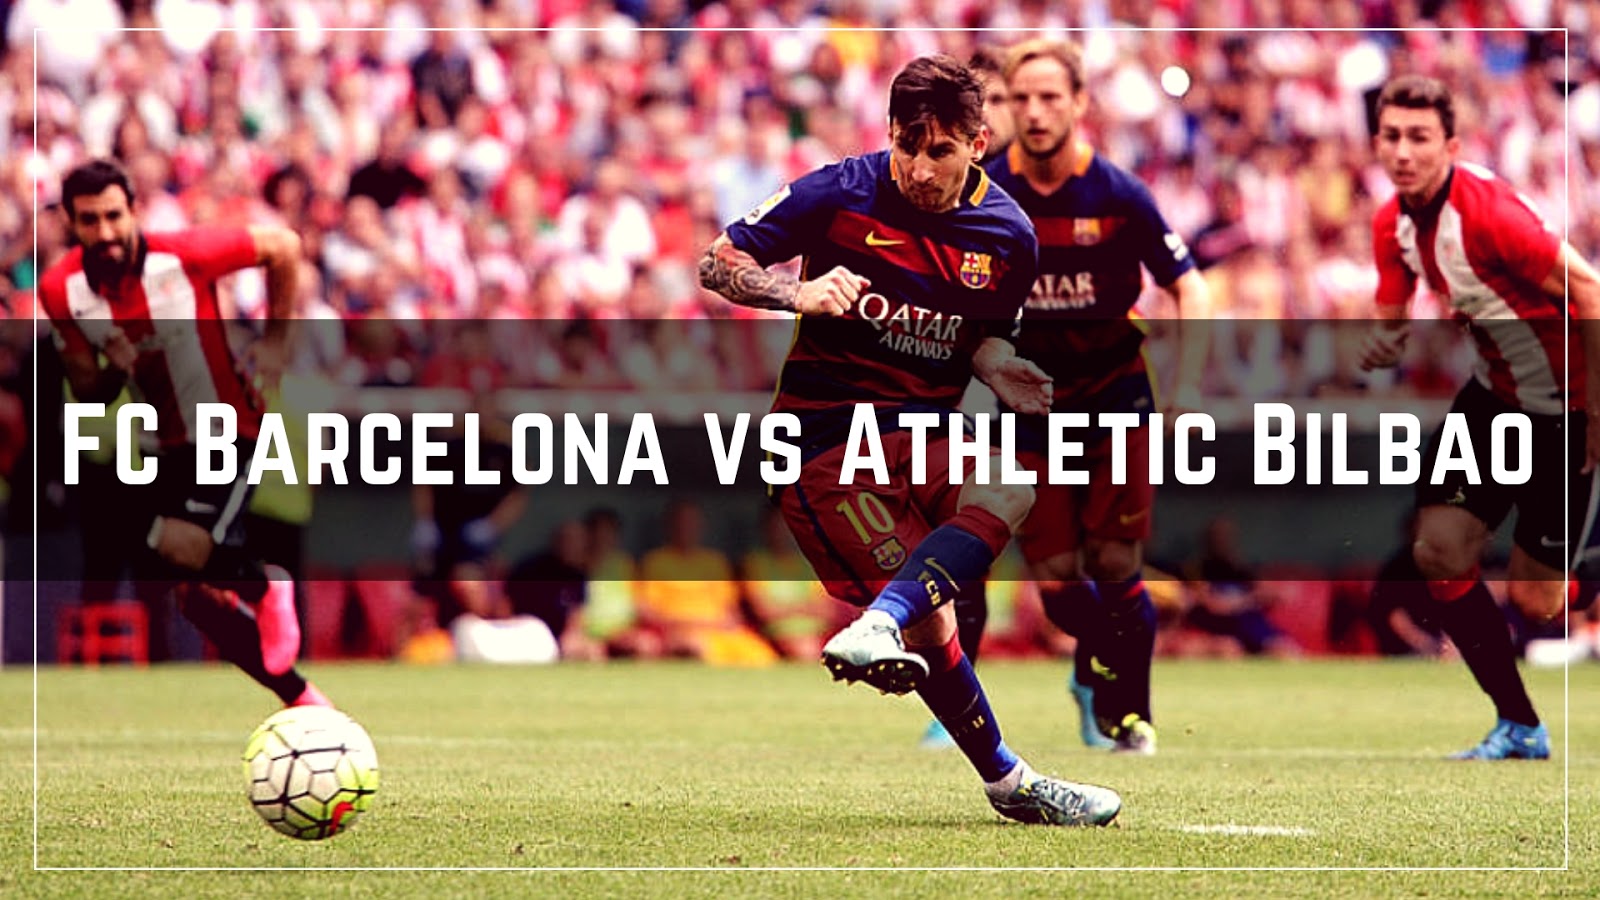 Lionel Messi scoring against Athletic Bilbao #lionelmess #messi #barcelona #barca #fcbarcelona